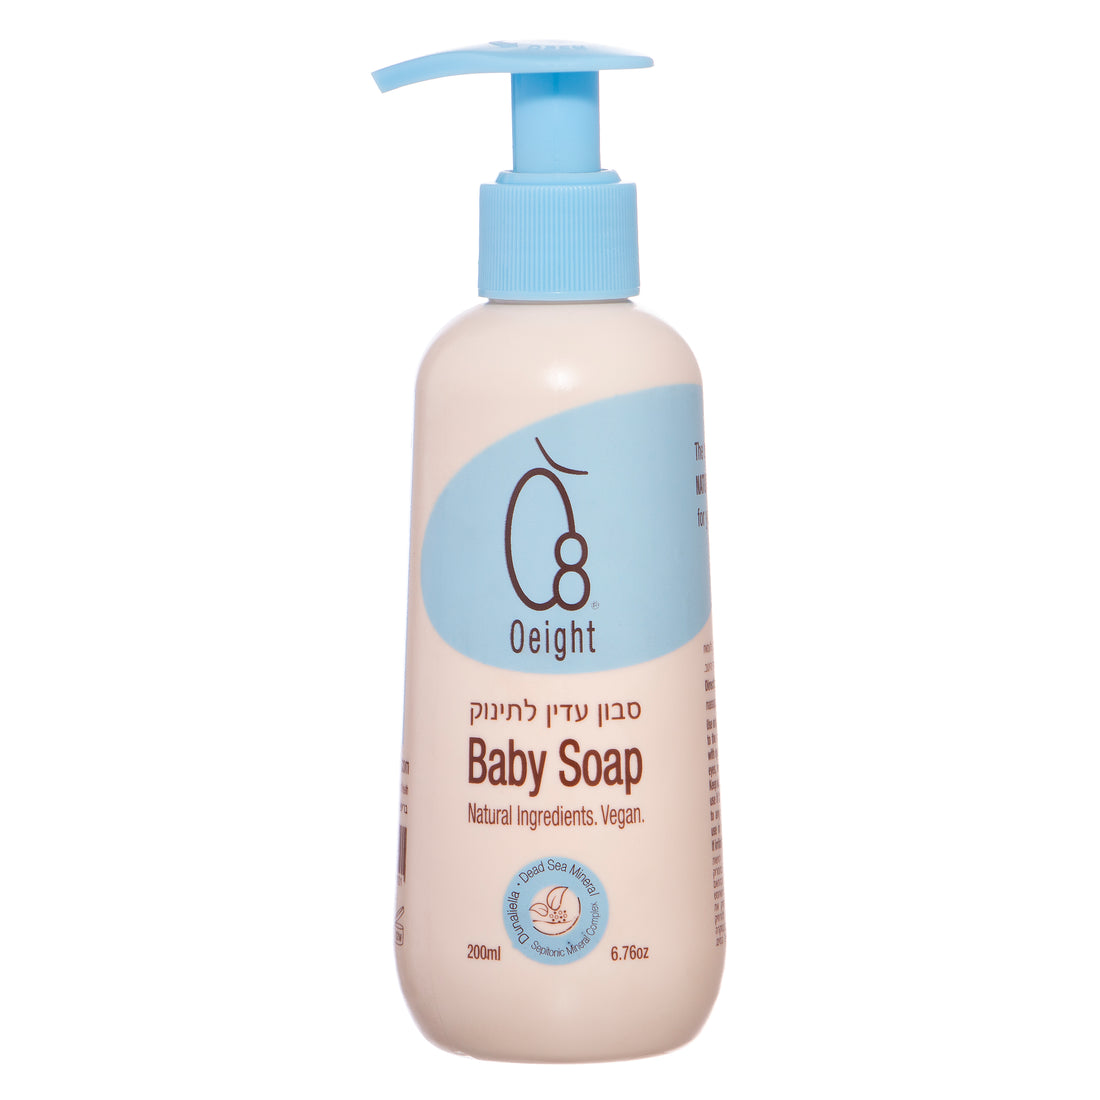 סבון עדין לתינוק - מבוסס רכיבים טבעיים בריח עדין